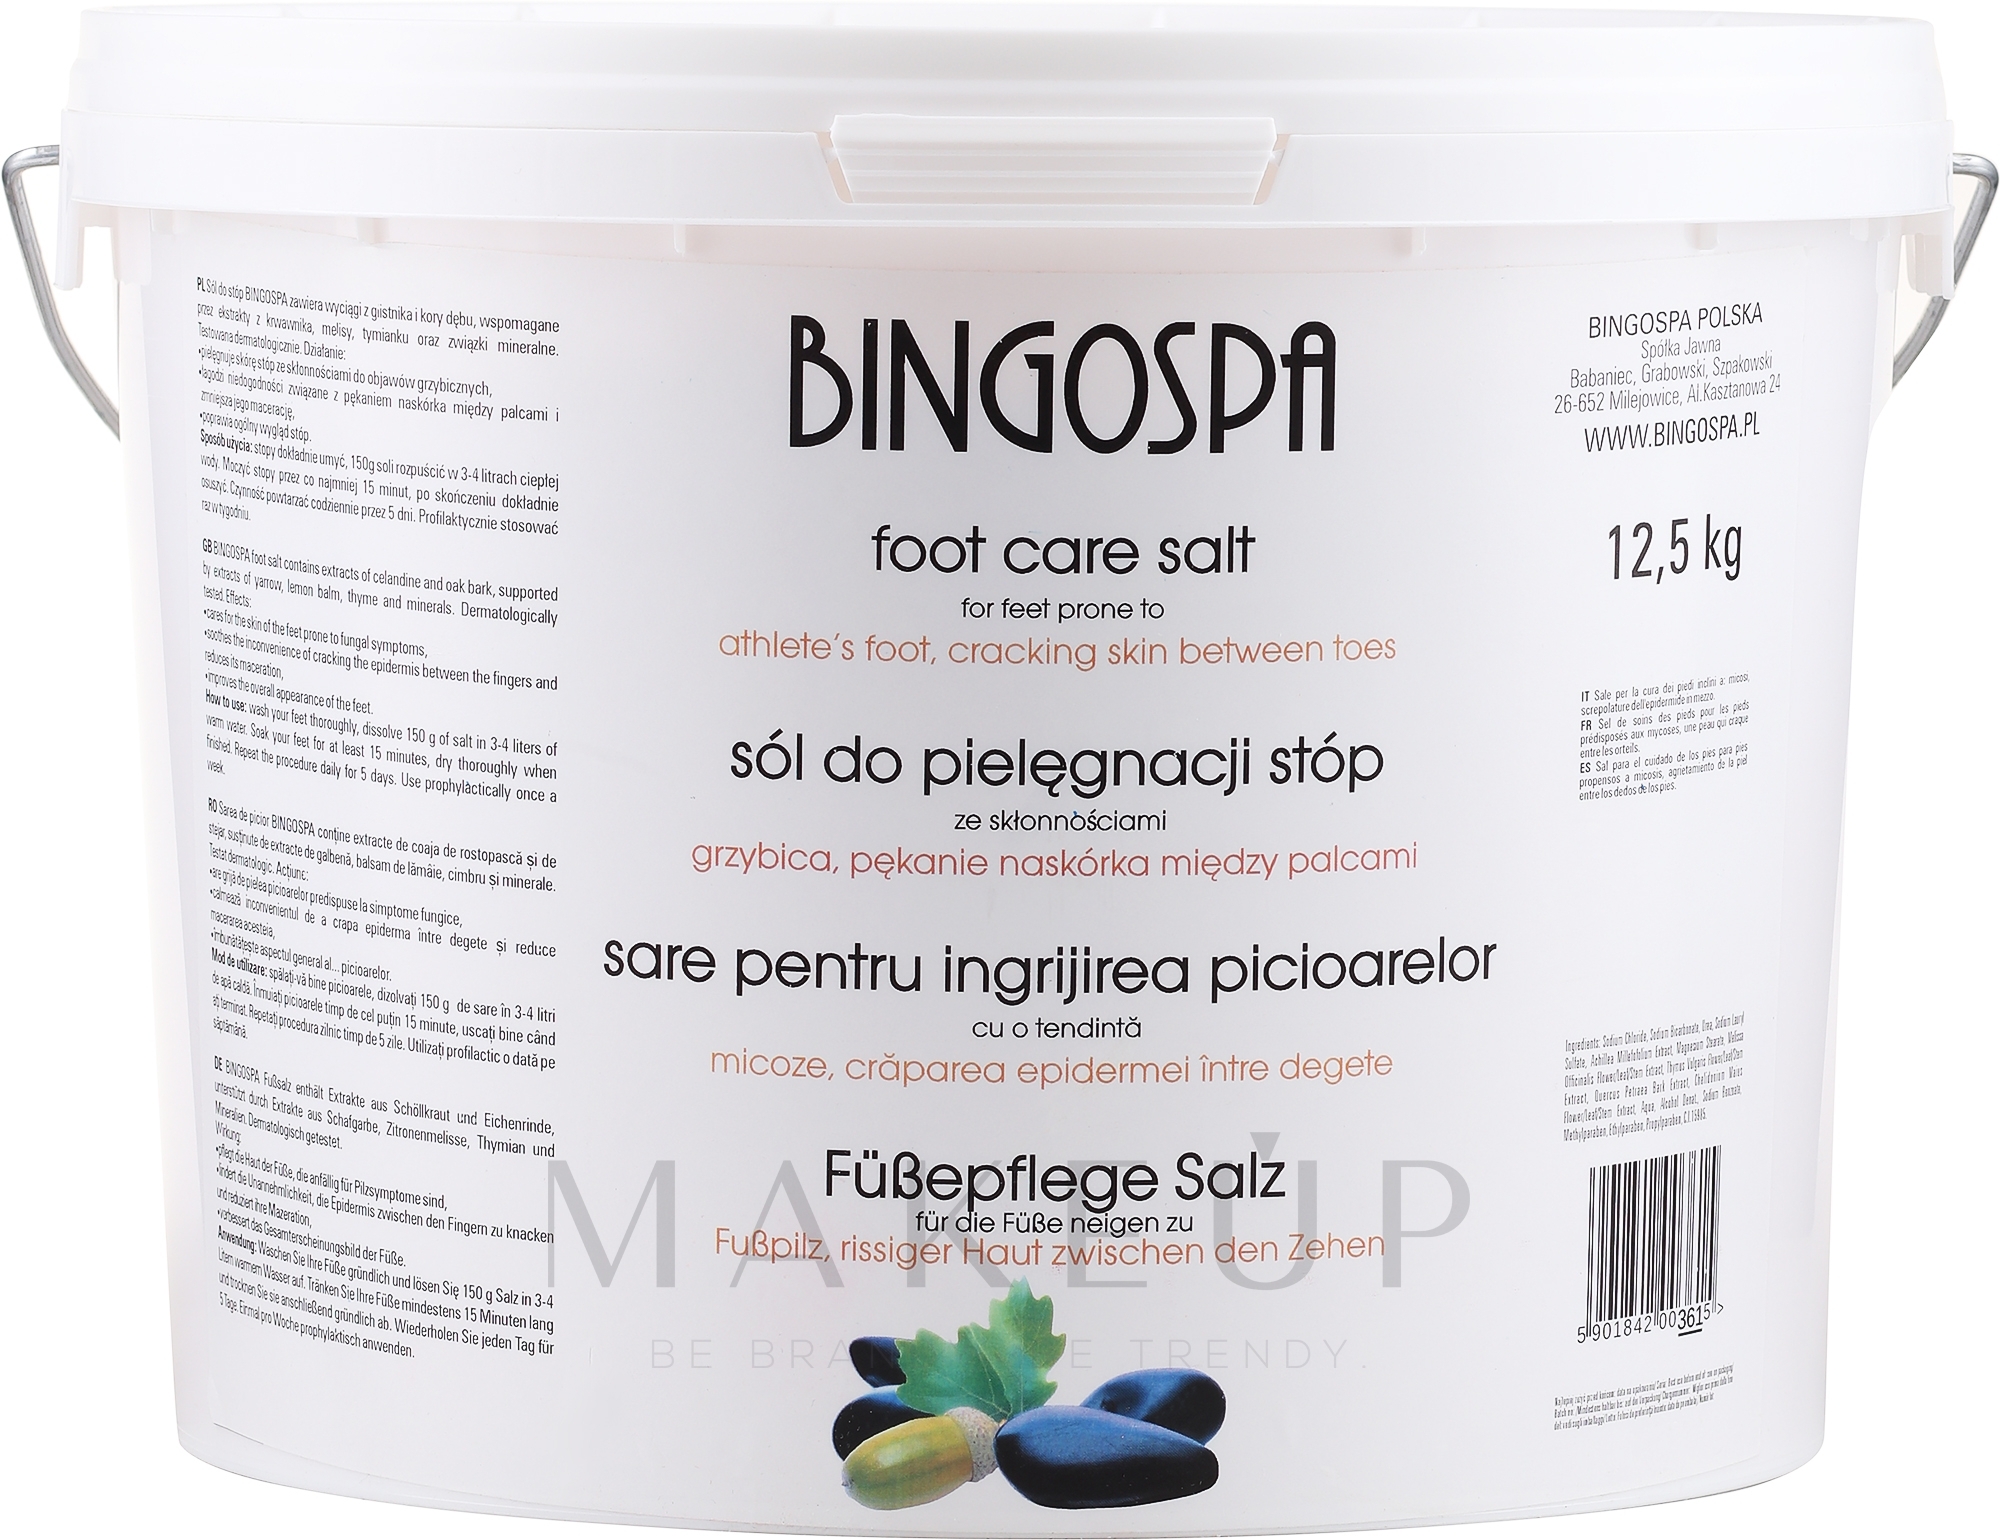 Fußbadesalz gegen Pilzinfektionen, Hautrisse und Schwitzen - BingoSpa Salt For Feet — Foto 12.5 kg